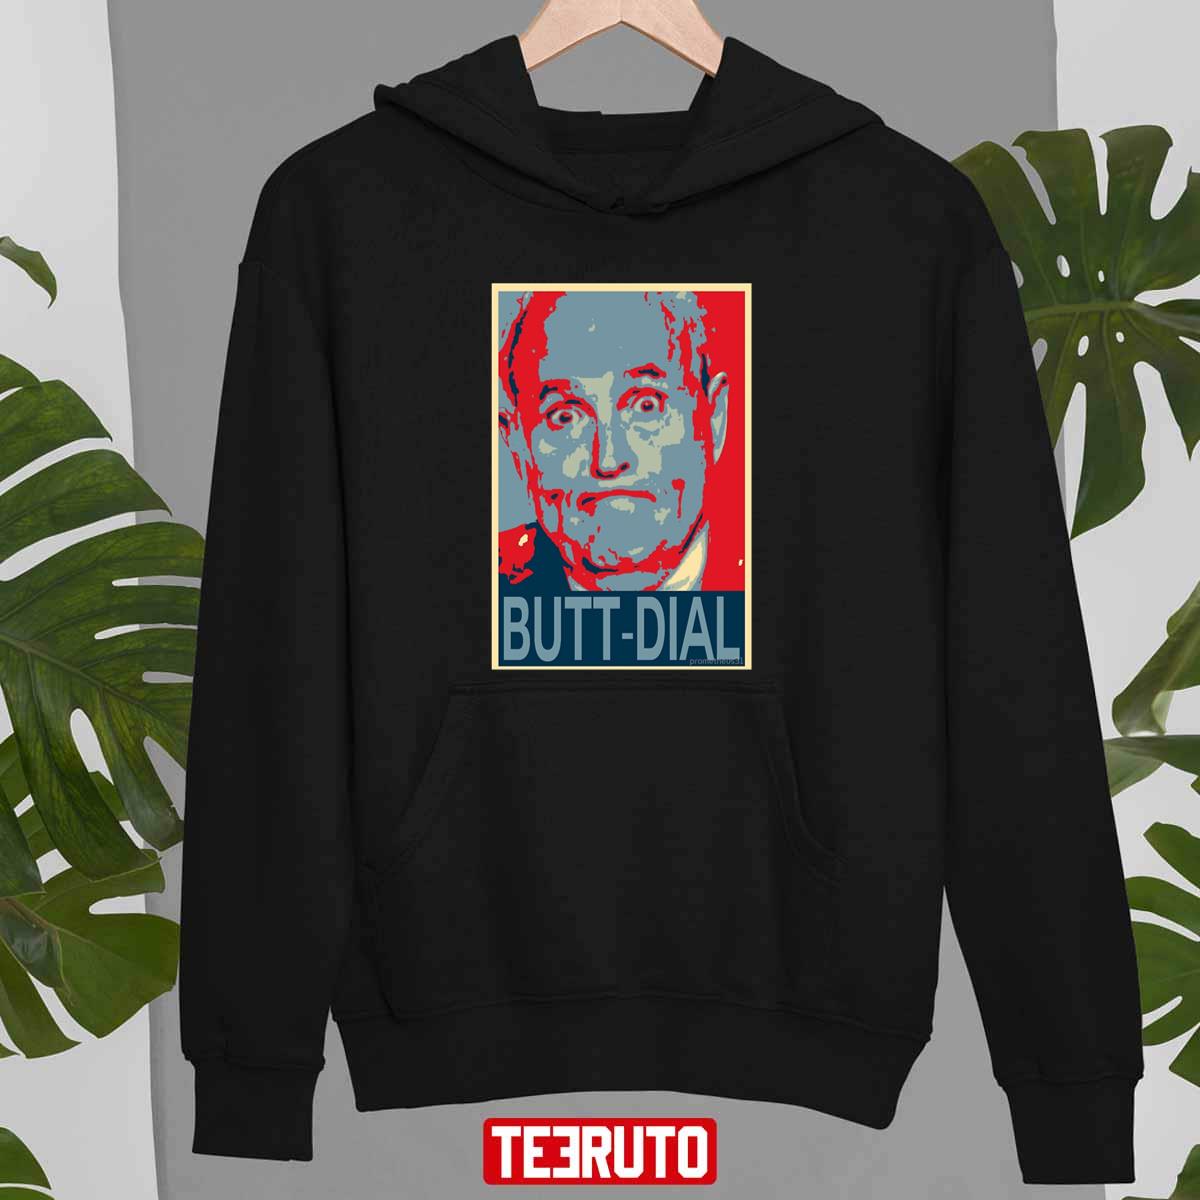 Butt-Dial Rudy Giuliani Hope Art Unisex T-Shirt